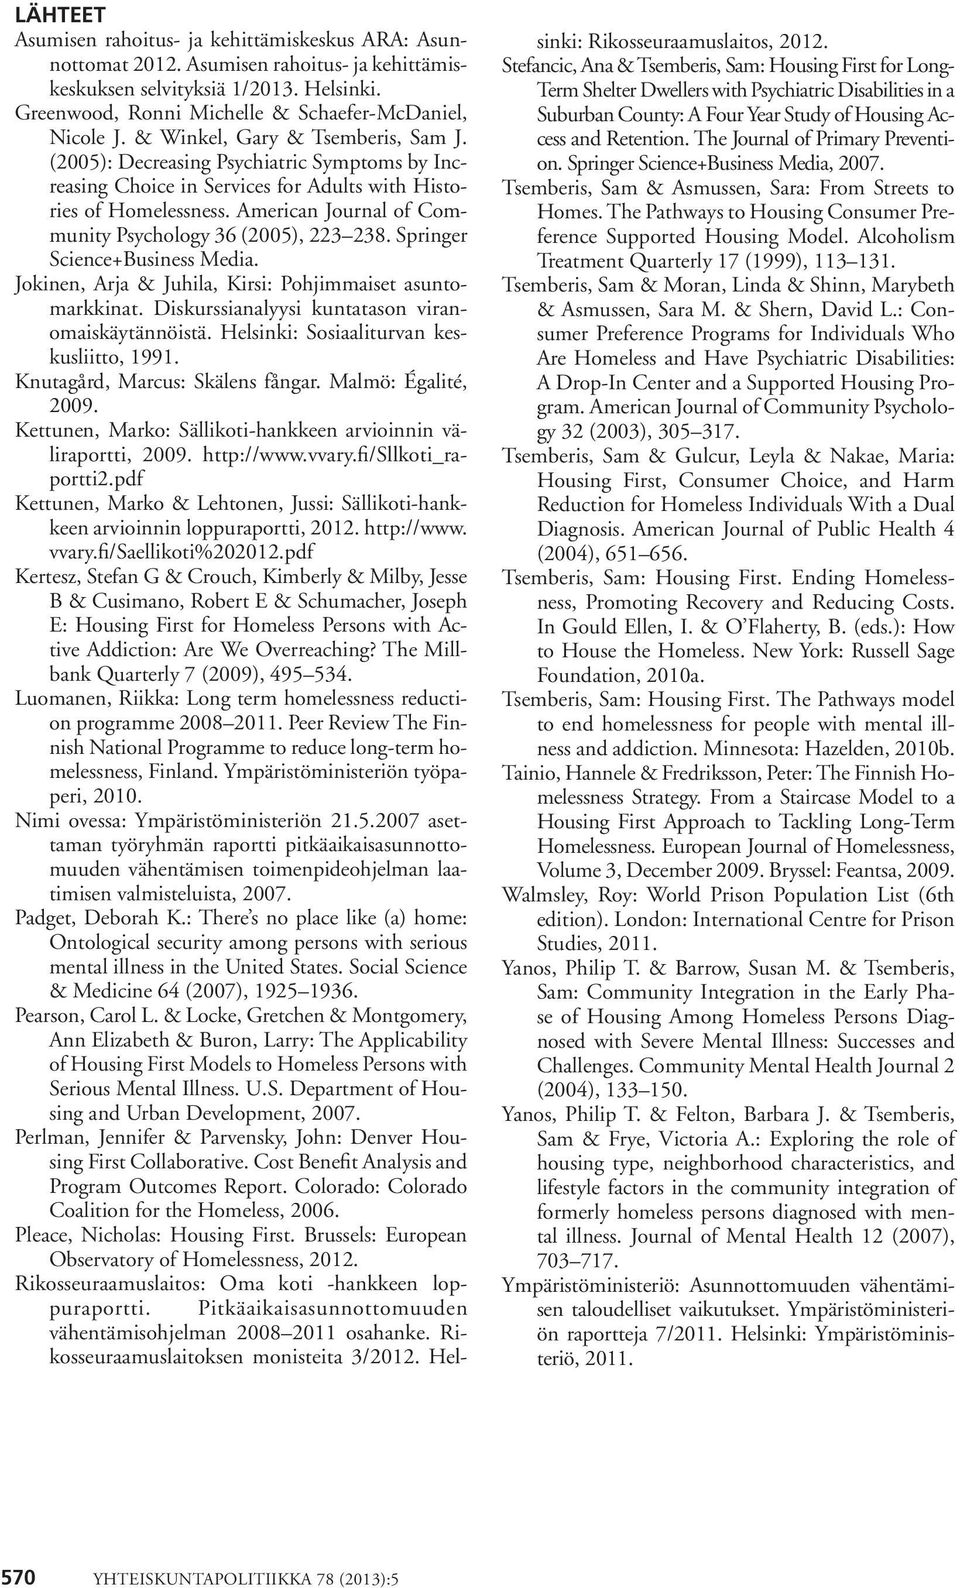 American Journal of Community Psychology 36 (2005), 223 238. Springer Science+Business Media. Jokinen, Arja & Juhila, Kirsi: Pohjimmaiset asuntomarkkinat.